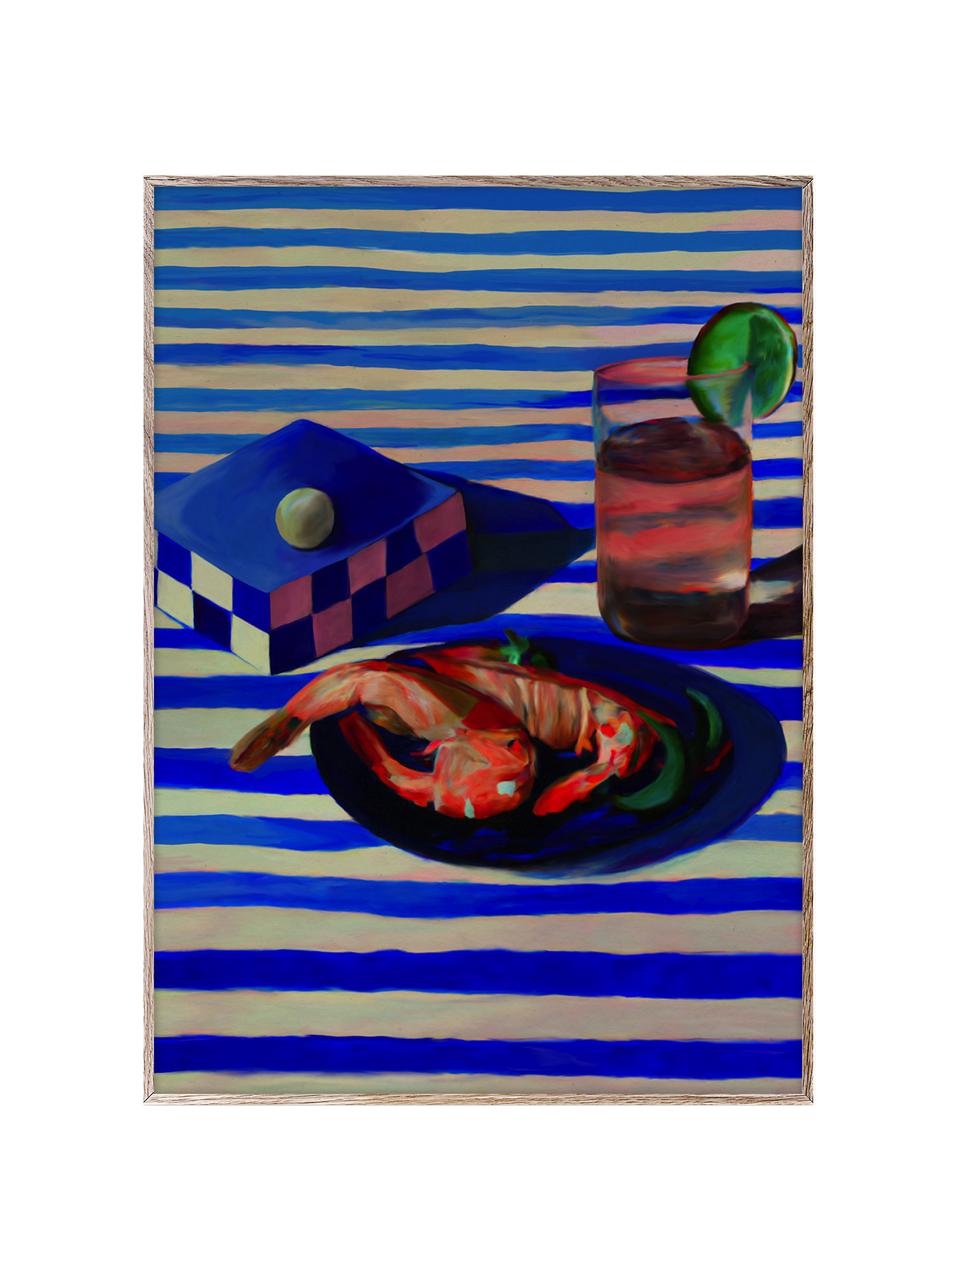 Plakát Shrimp & Stripes, 210g matný papír Hahnemühle, digitální tisk s 10 barvami odolnými vůči UV záření, Královská modrá, korálově červená, Š 50 cm, V 70 cm